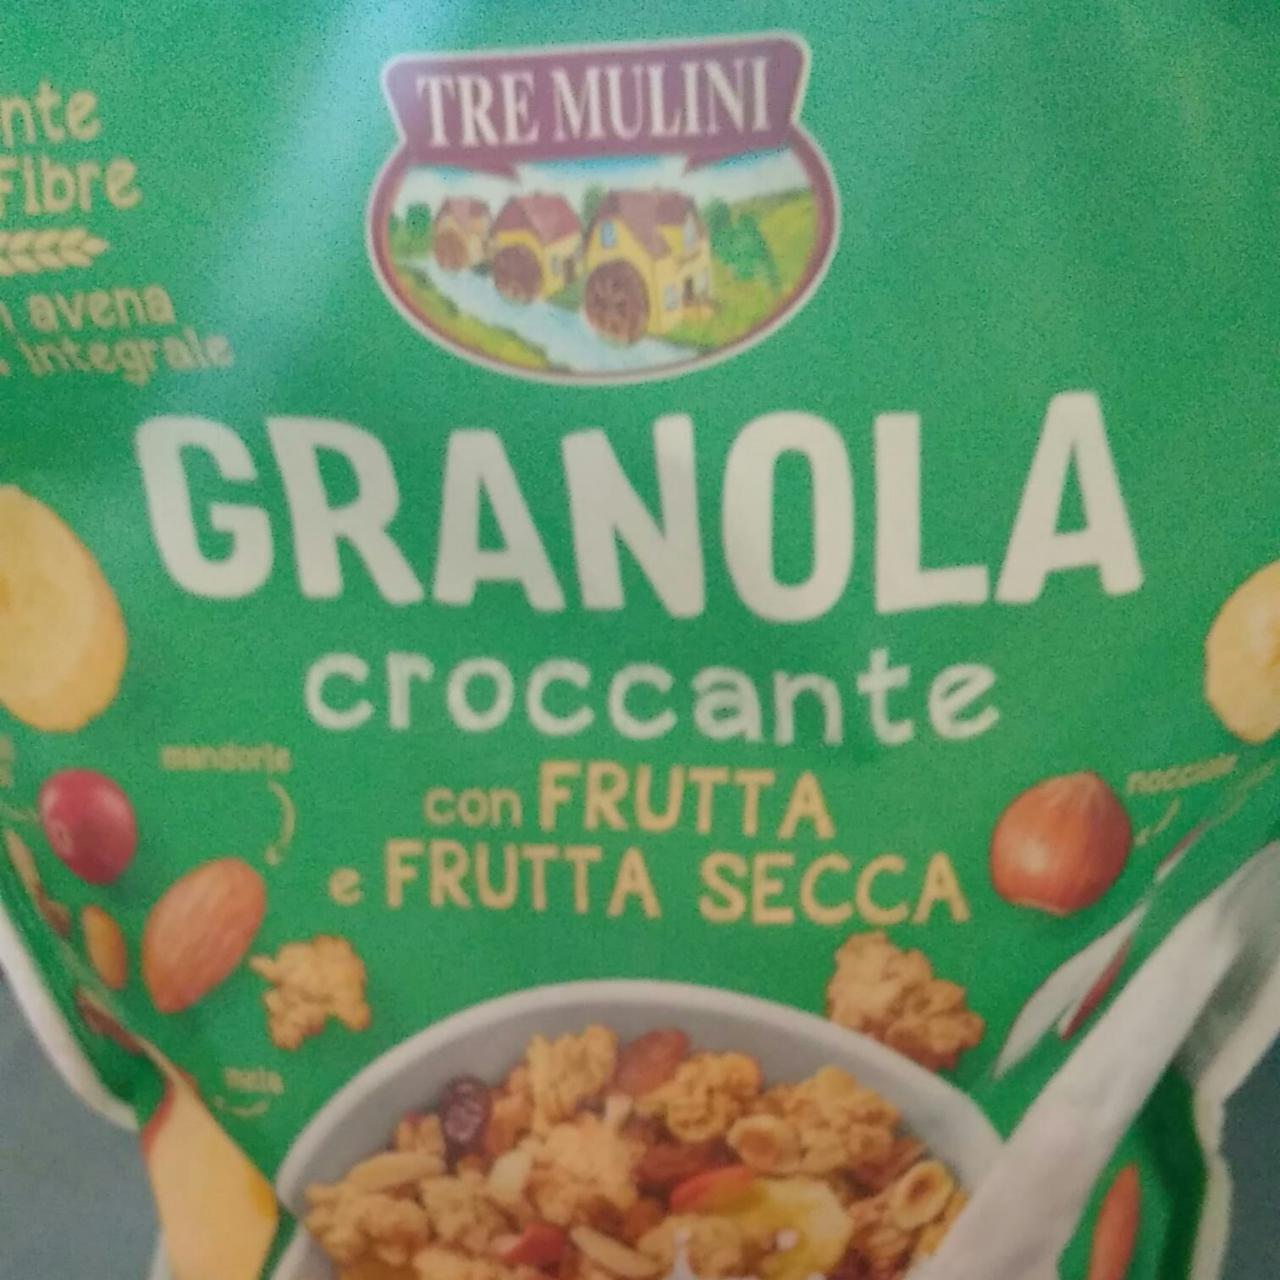 Fotografie - Granola croccante con frutta e frutta secca Tre mulini